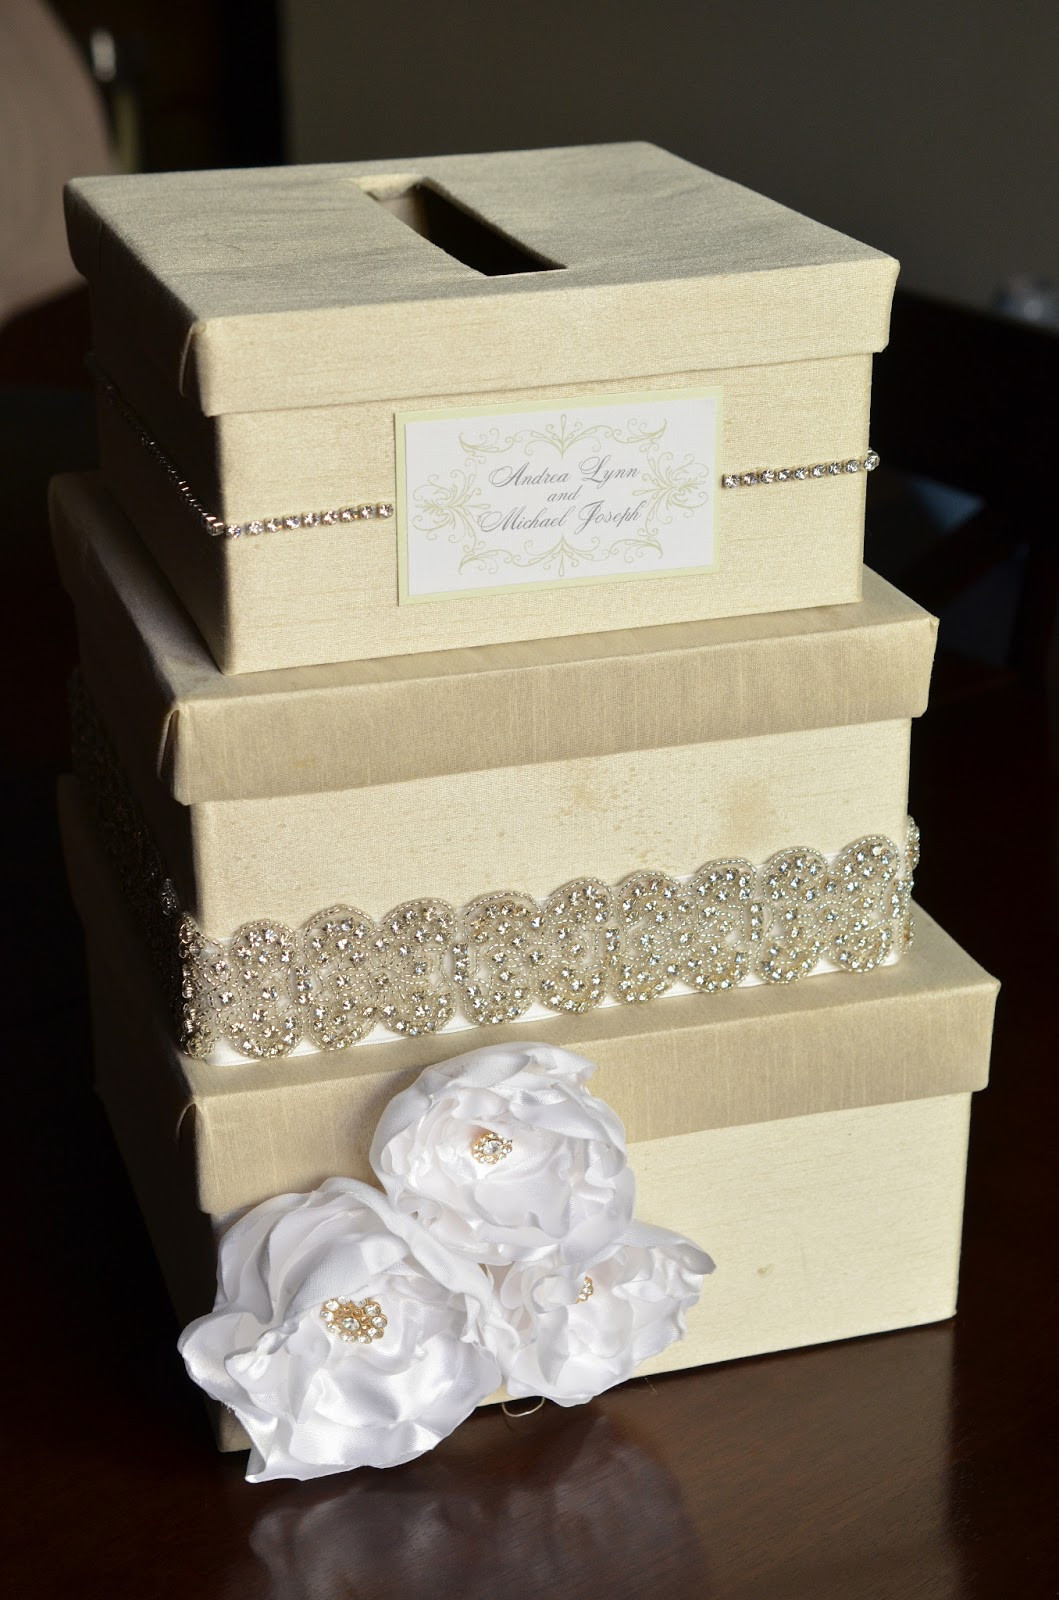 DIY Wedding Gift Card Box
 DIY Wedding Card Box Tutorial Andrea Lynn HANDMADE